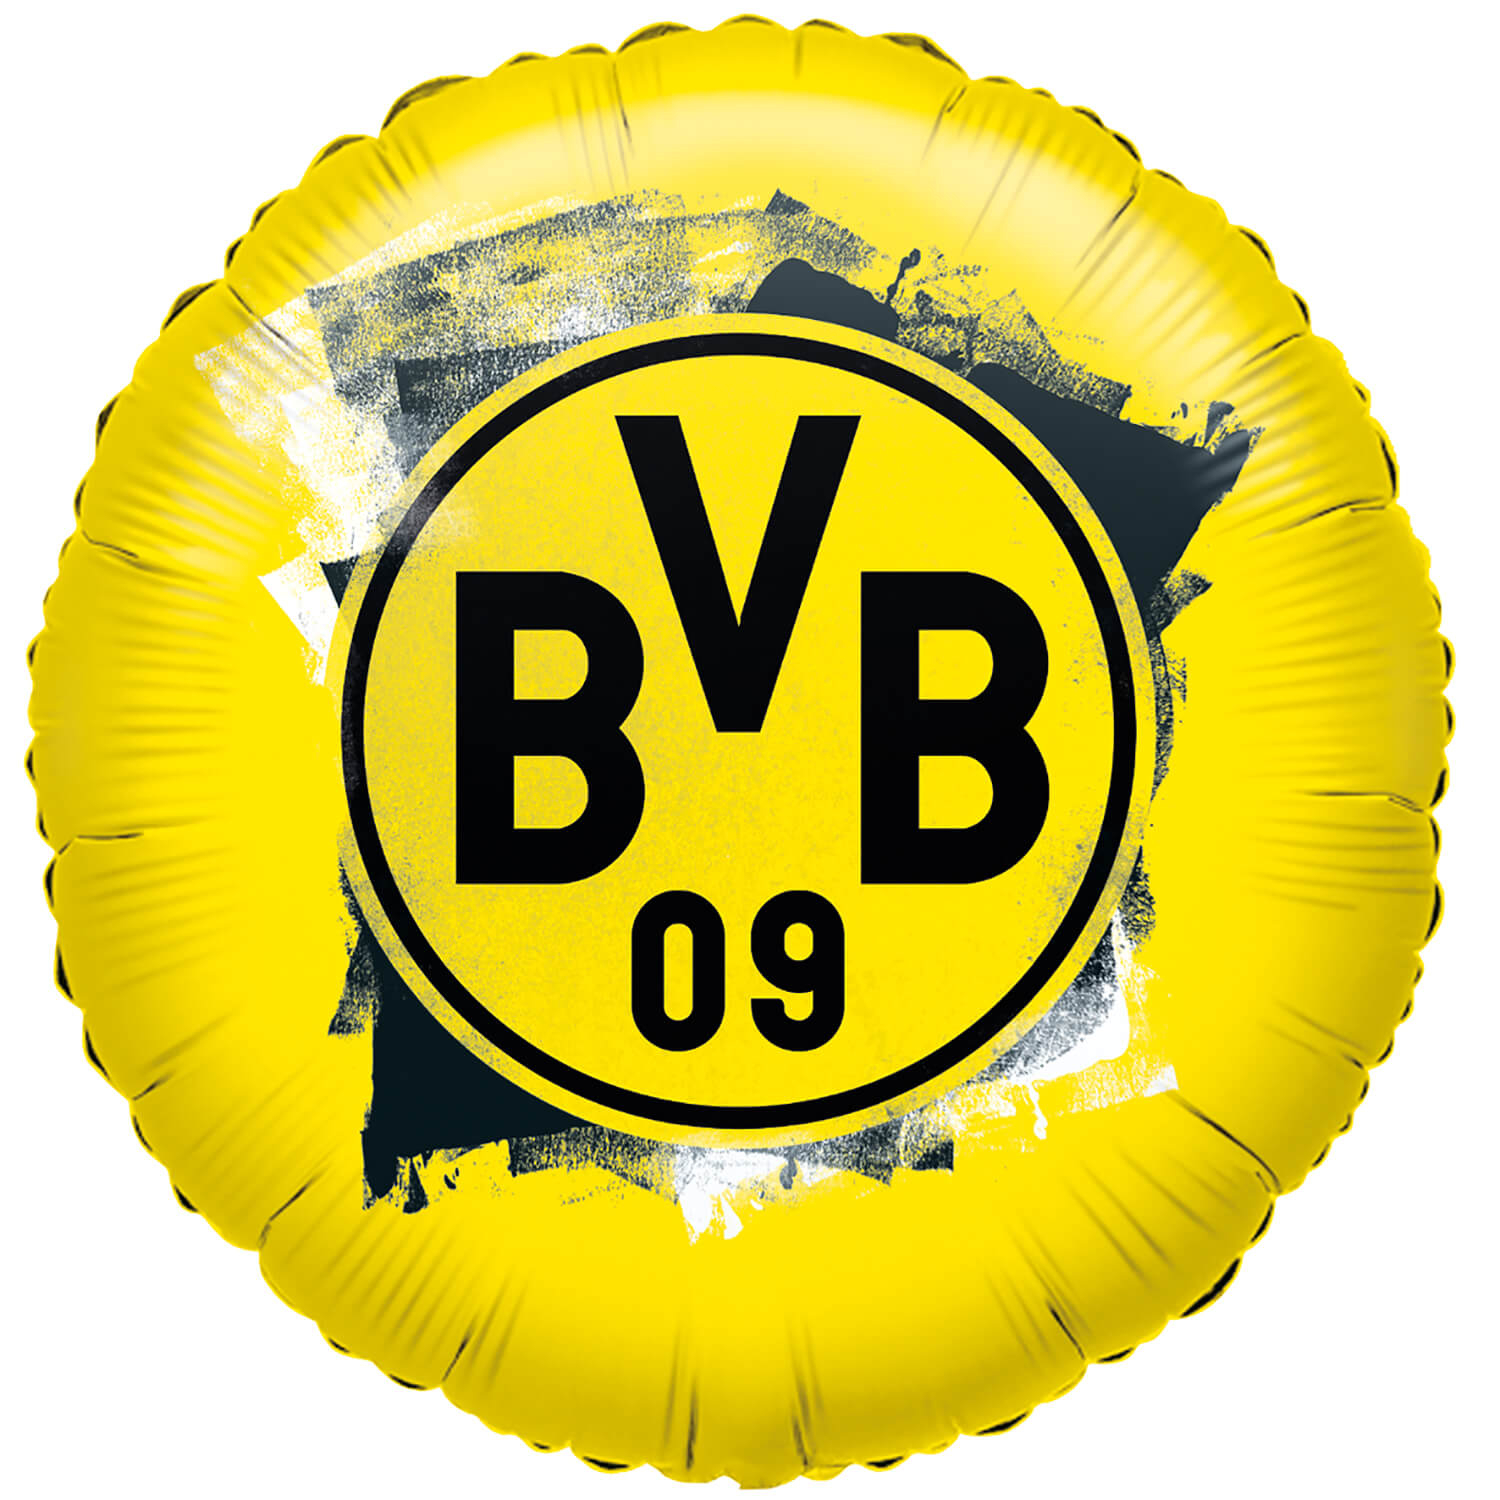 BVB 09 - Folienballon